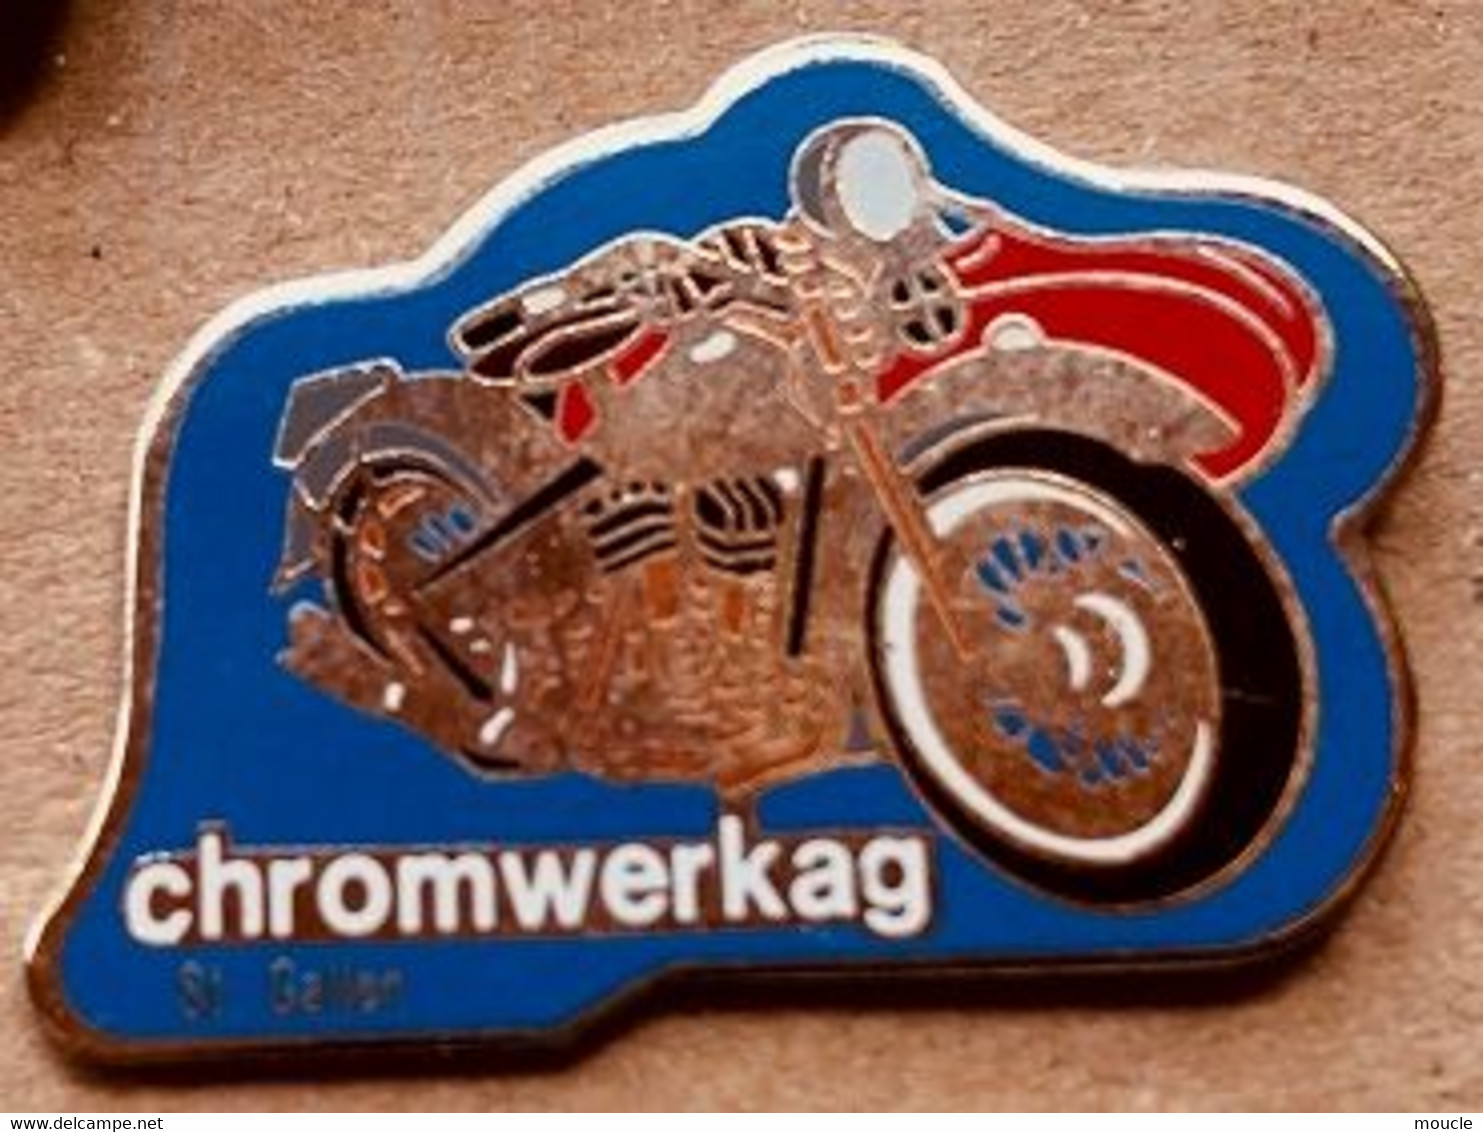 MOTO - SIDE CAR - CHROMWERKAG - SAINT GALLEN - SCHWEIZ - SAINT GALL - SUISSE - MOTORRAD    -                 (18) - Motorräder